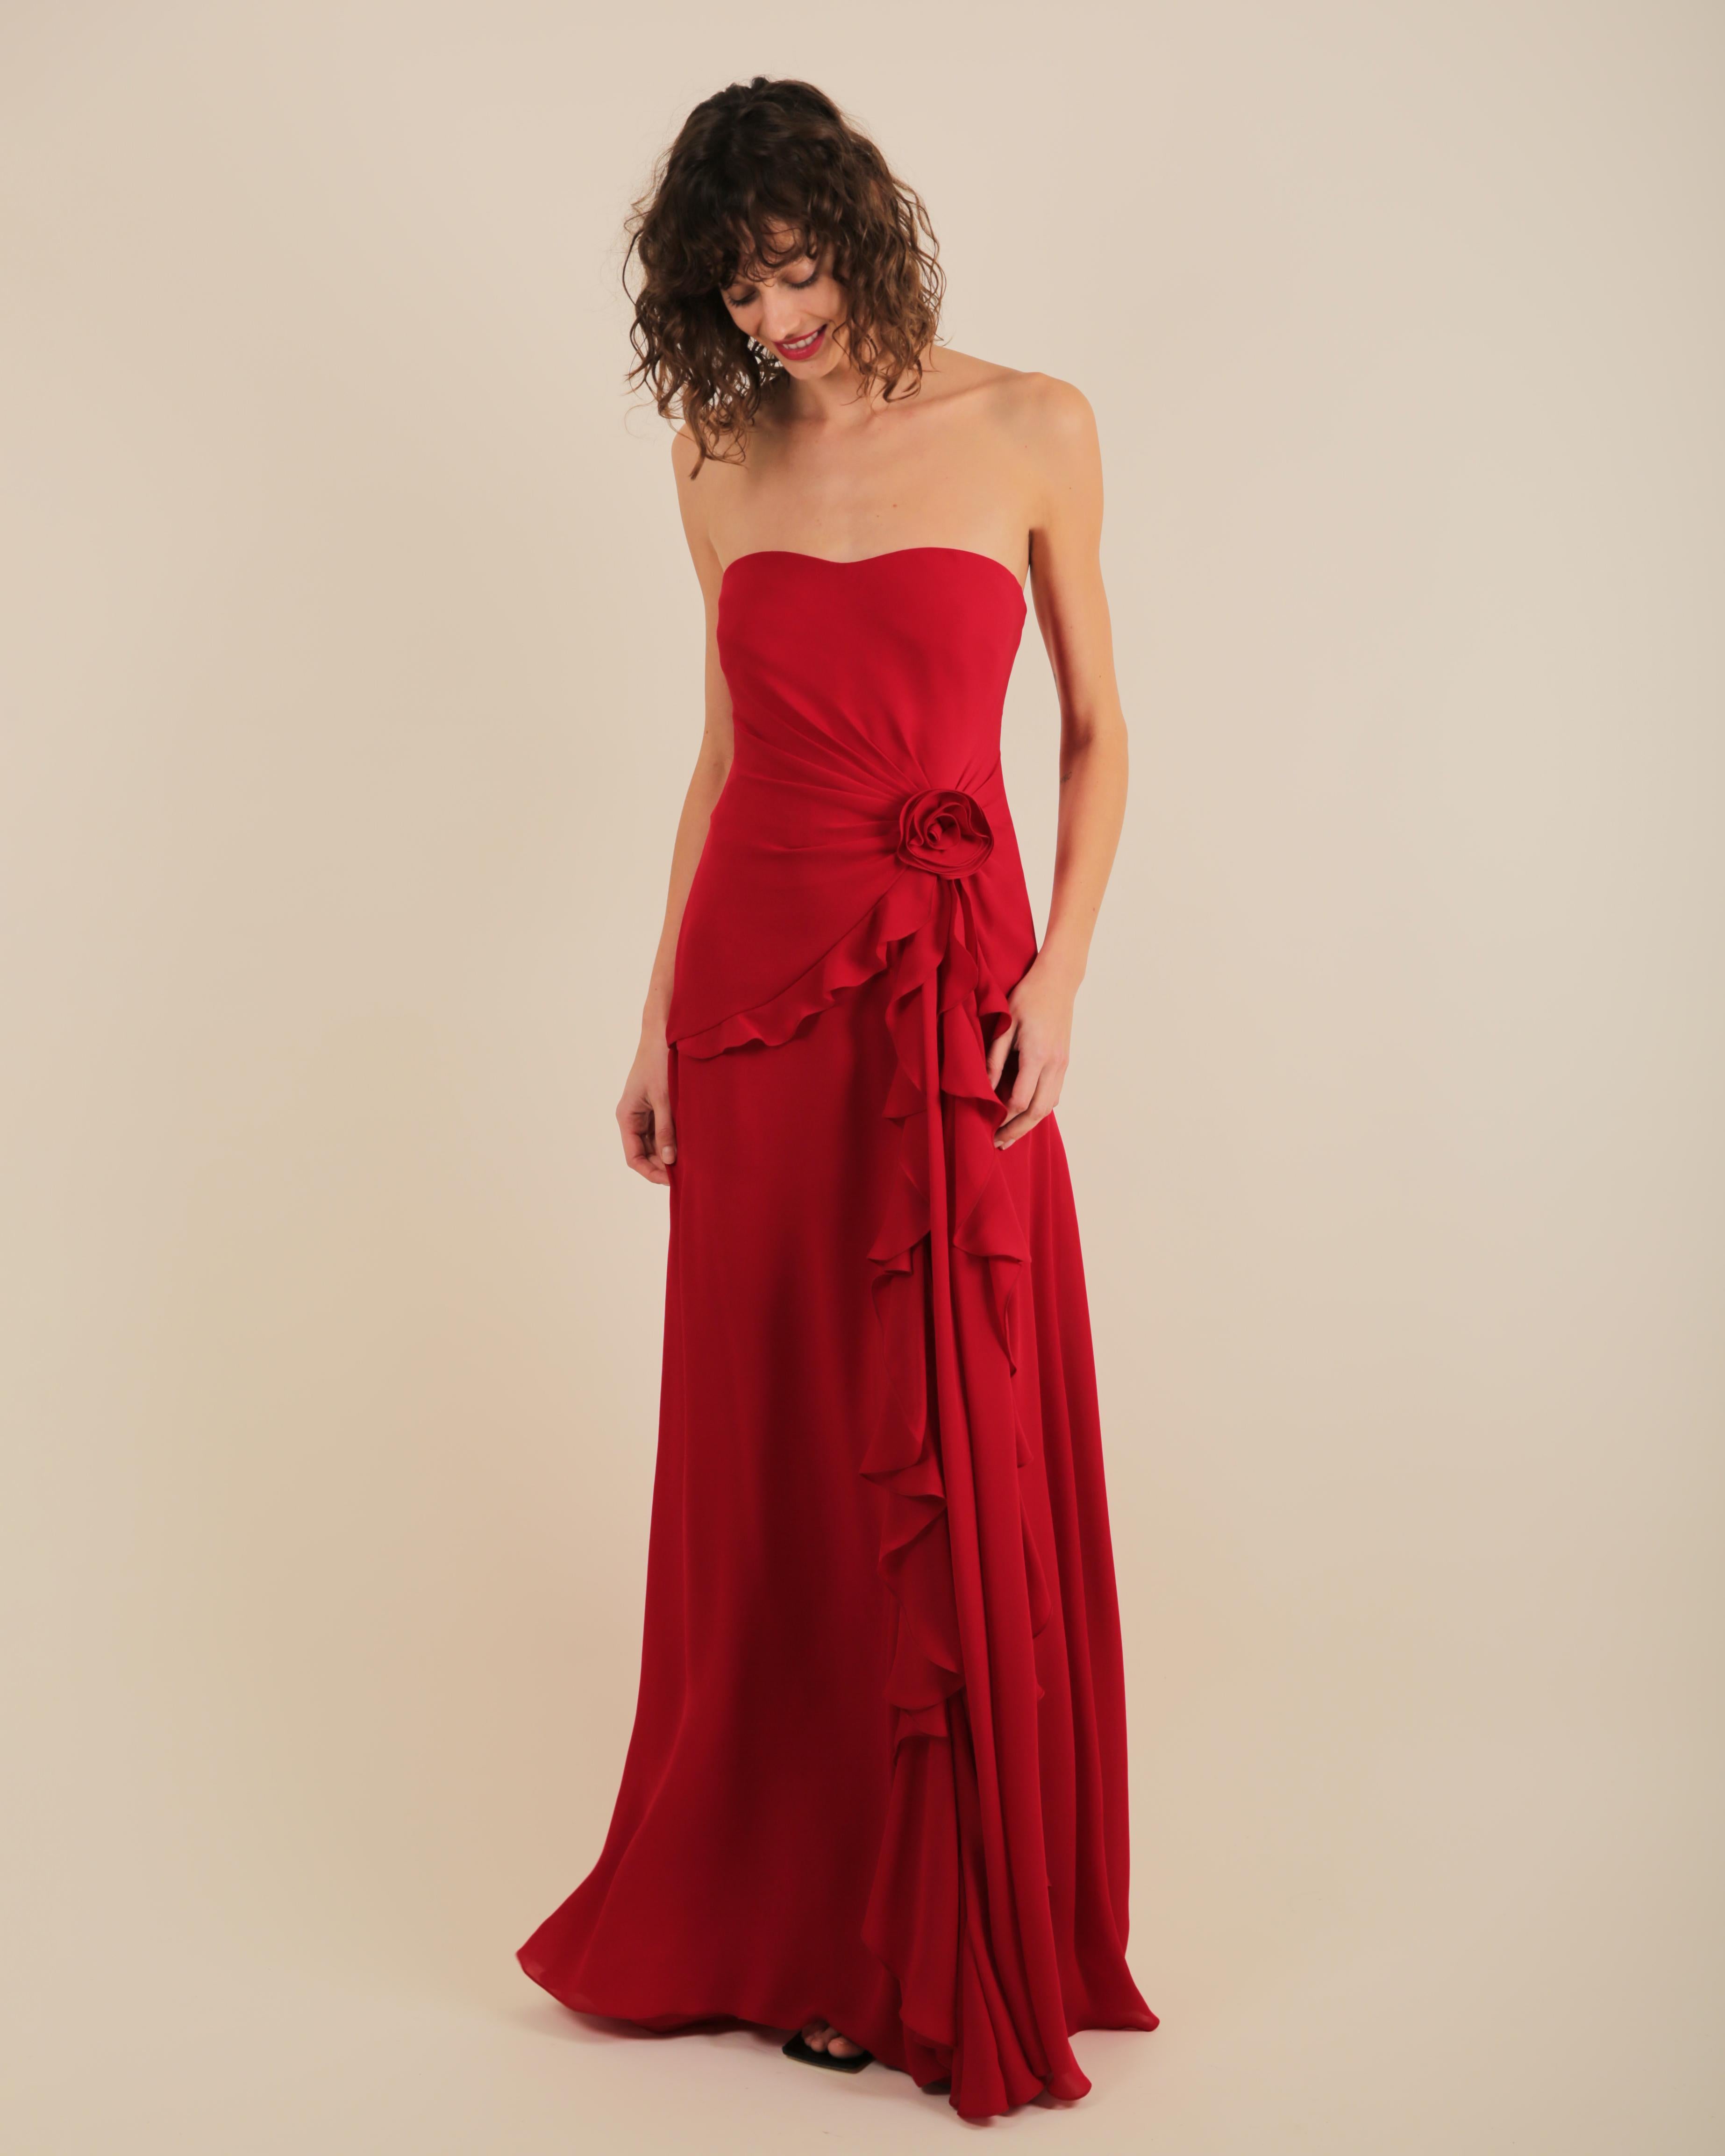 Ralph Lauren SS 2013 strapless bustier red sweetheart neck train silk gown dress 4